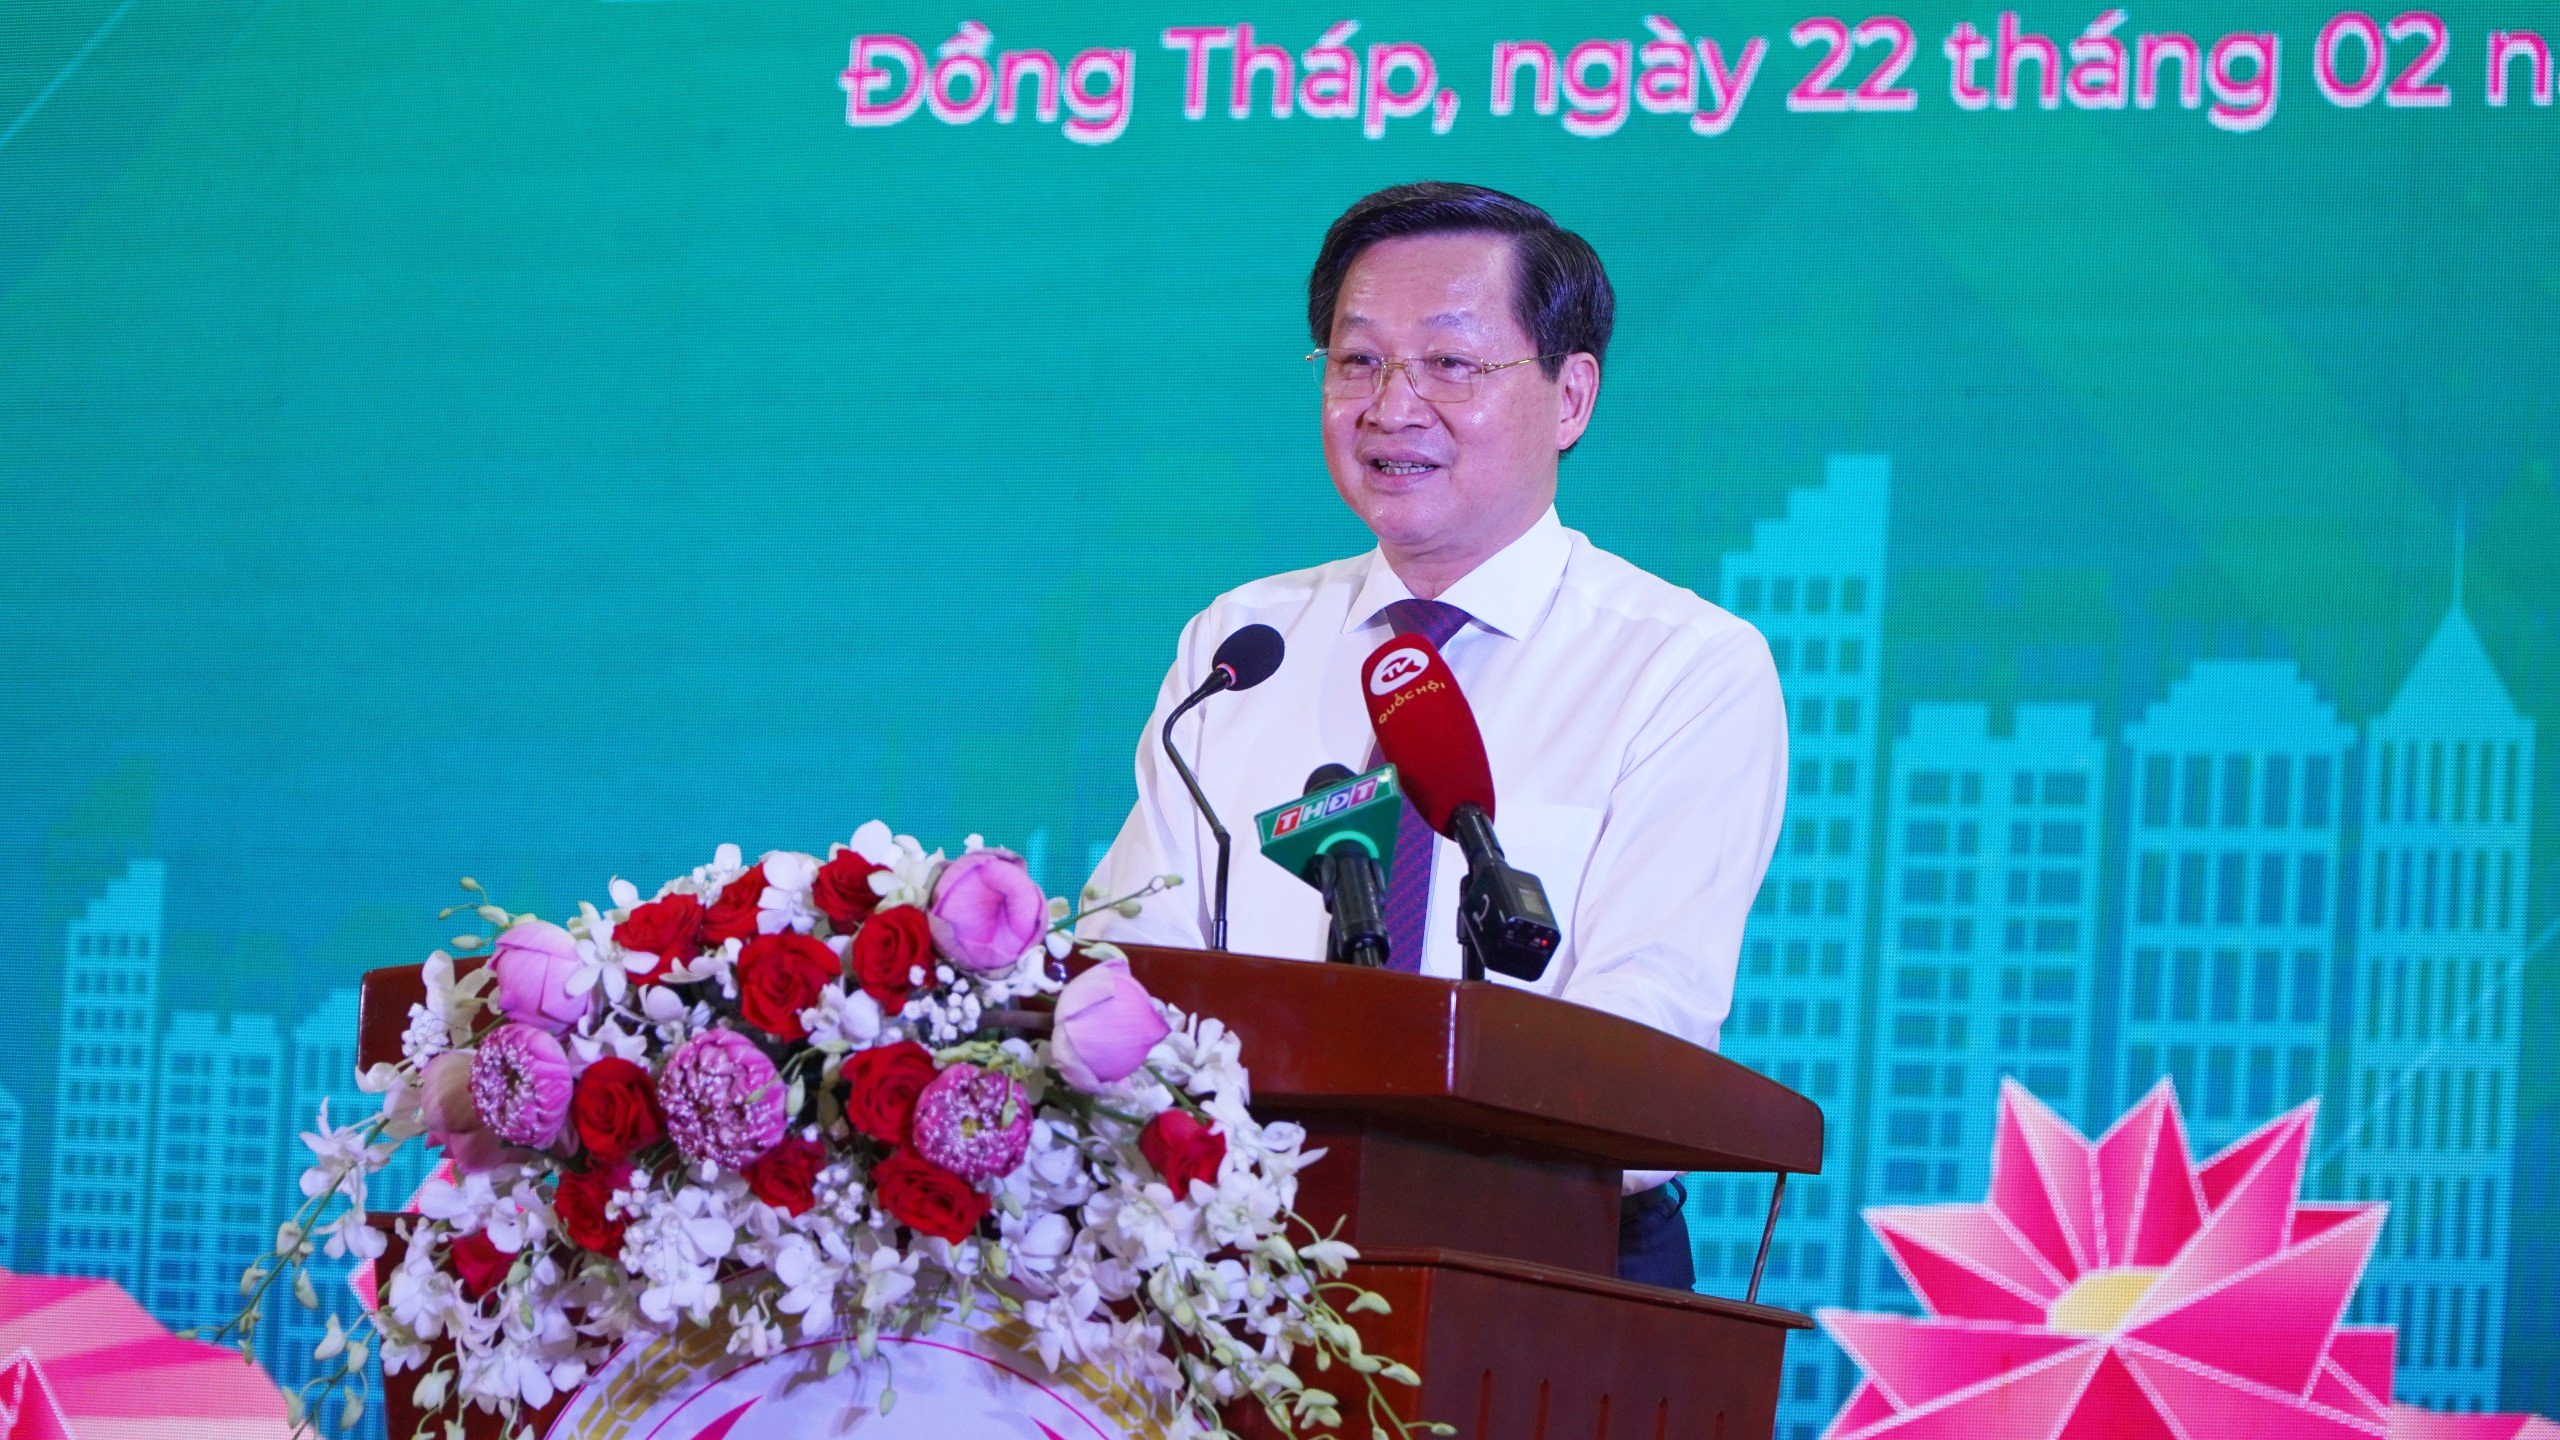 Phó Thủ tướng Lê Minh Khái mong muốn nhiều nhà đầu tư, tổ chức quốc tế đầu tư vào tỉnh Đồng Tháp- Ảnh 1.